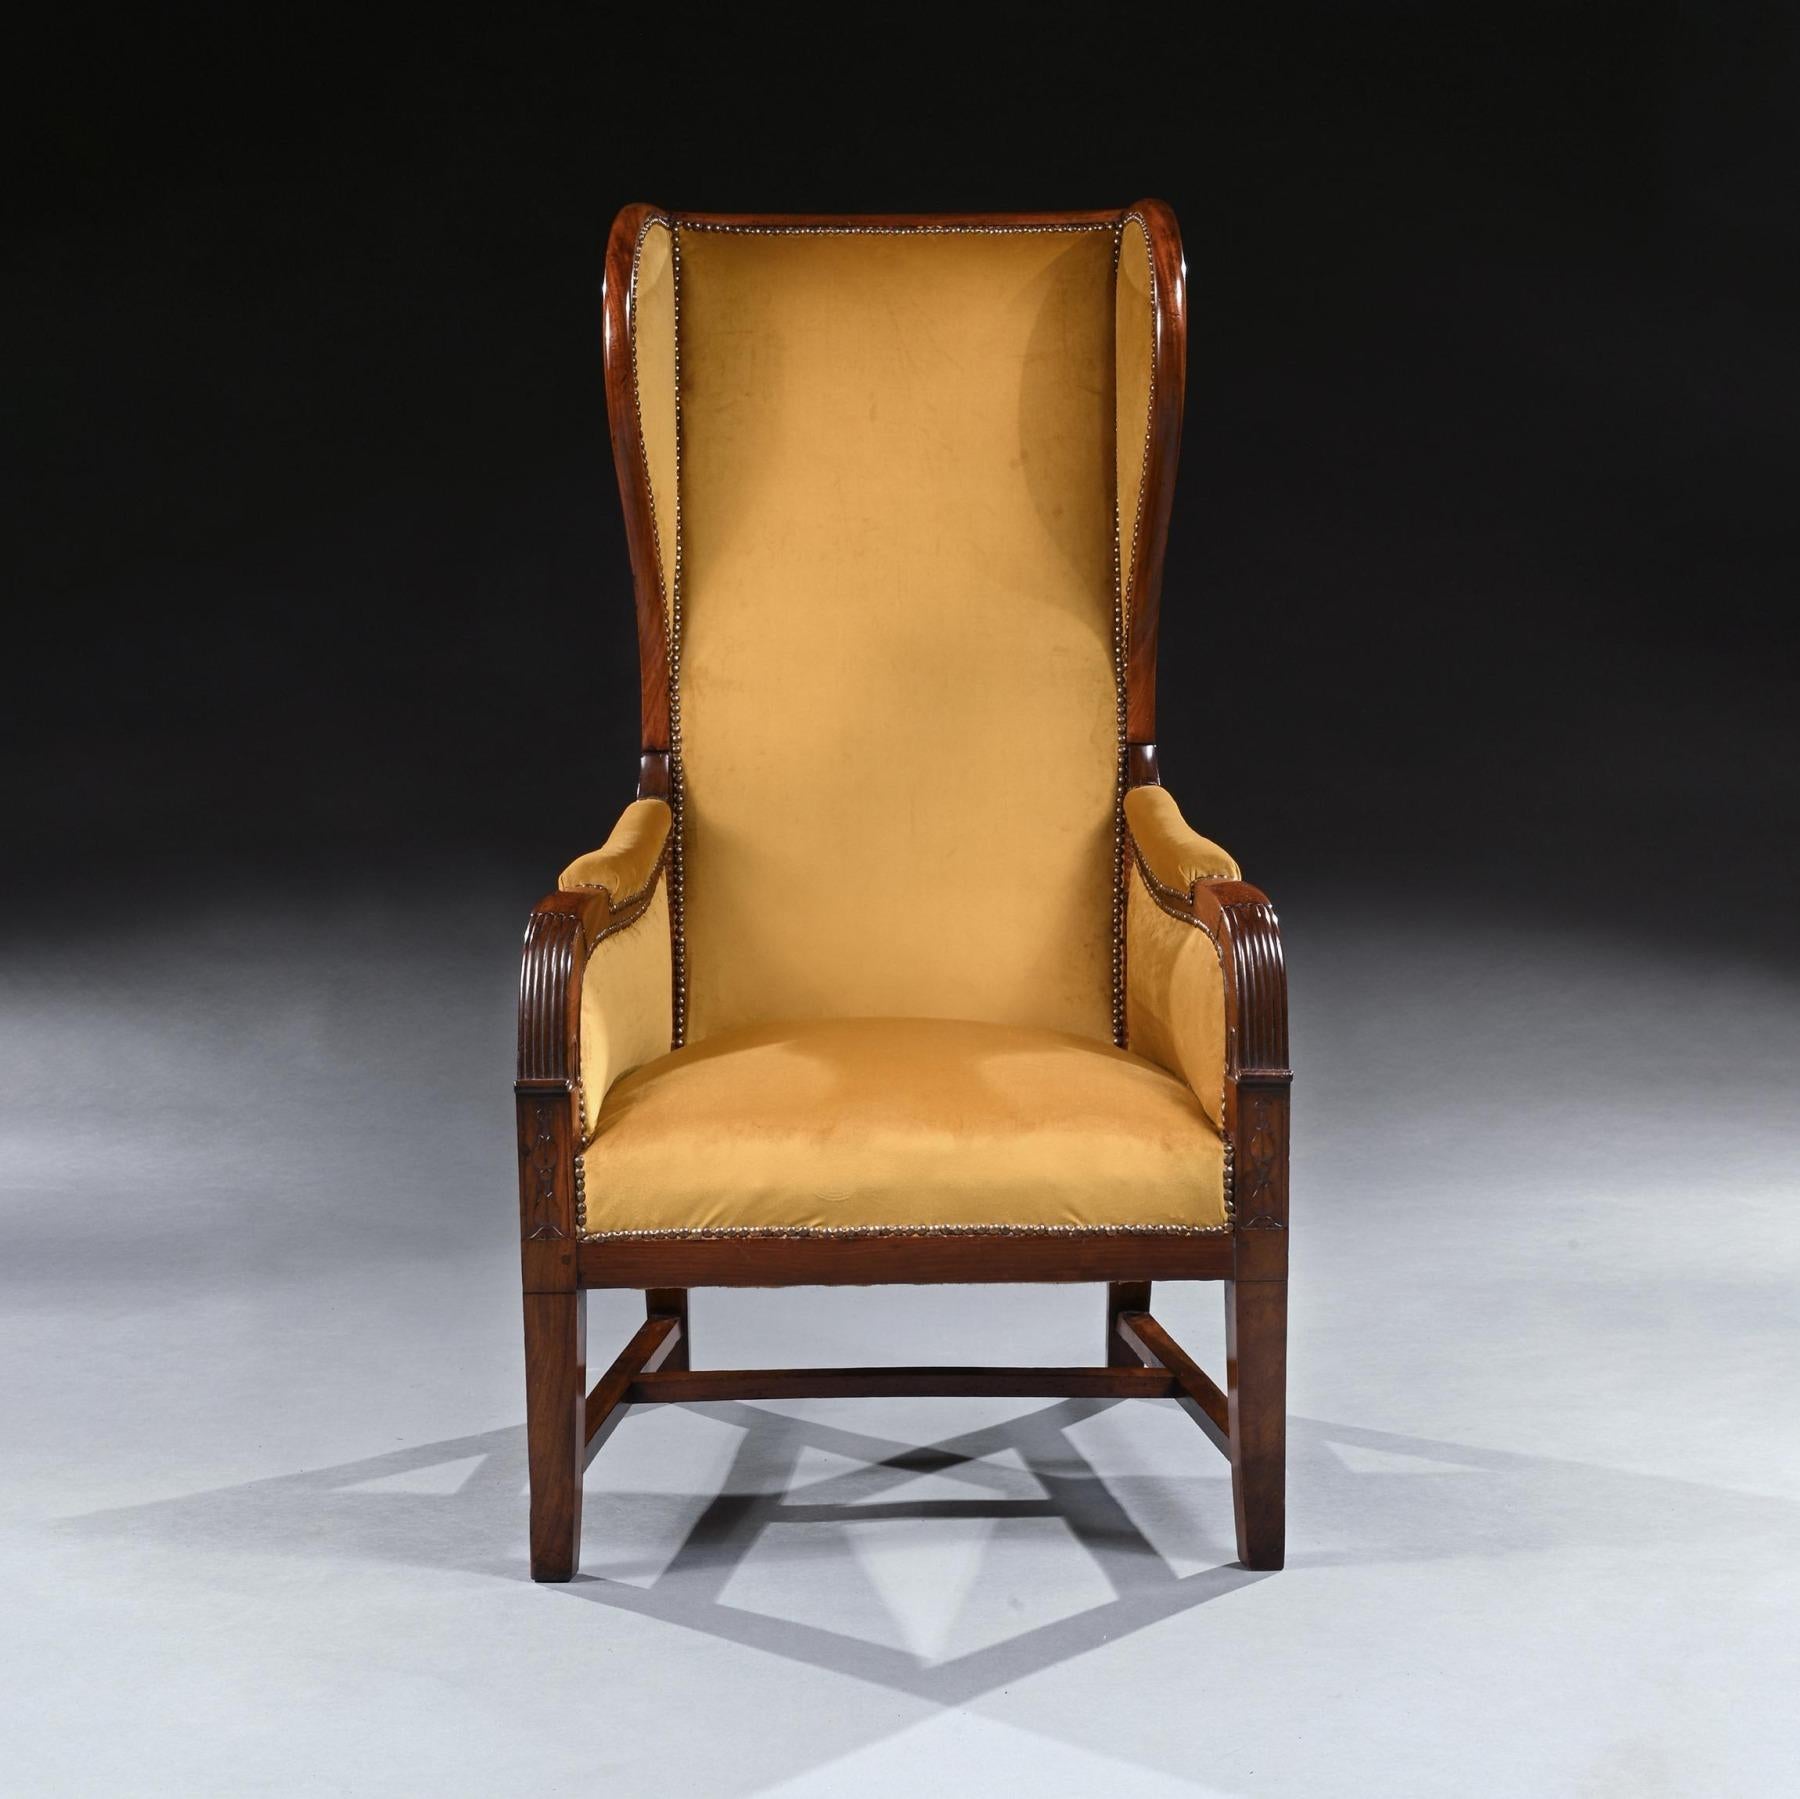 Ein ungewöhnlicher französischer Empire-Sessel aus Mahagoni mit Lehne und hohen Proportionen.

Französisch, CIRCA 1820.

Mit eleganten Proportionen und einer ungewöhnlich hohen, geflügelten Mahagoni-Rückenlehne. Der gepolsterte Sitz zwischen